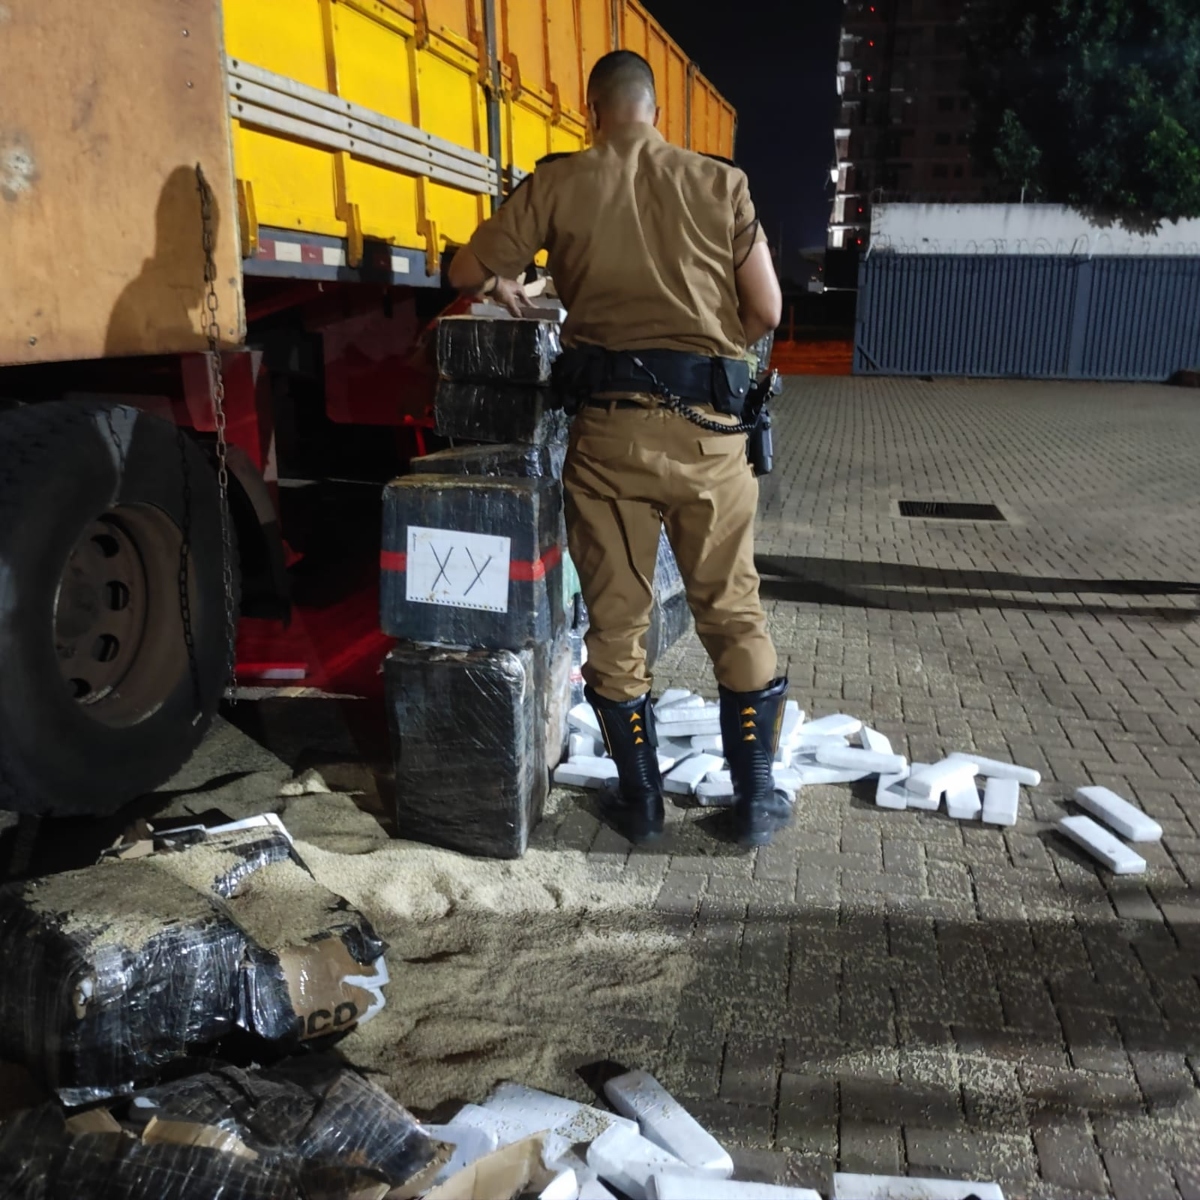  Policial contabilizando a droga apreendida em caminhão paraguaio no Paraná 